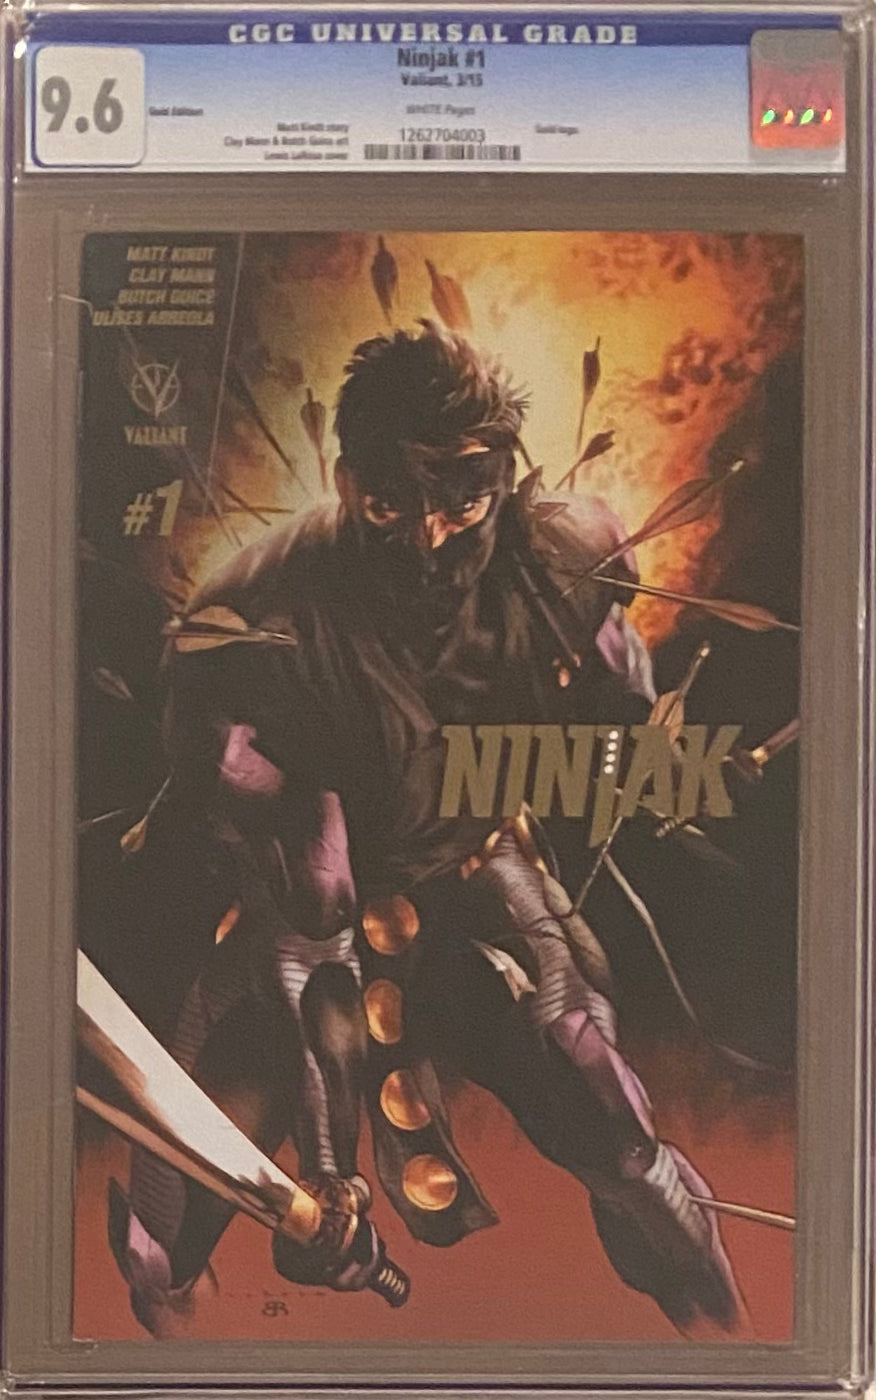 Ninjak #1 Gold Edition CGC 9.6